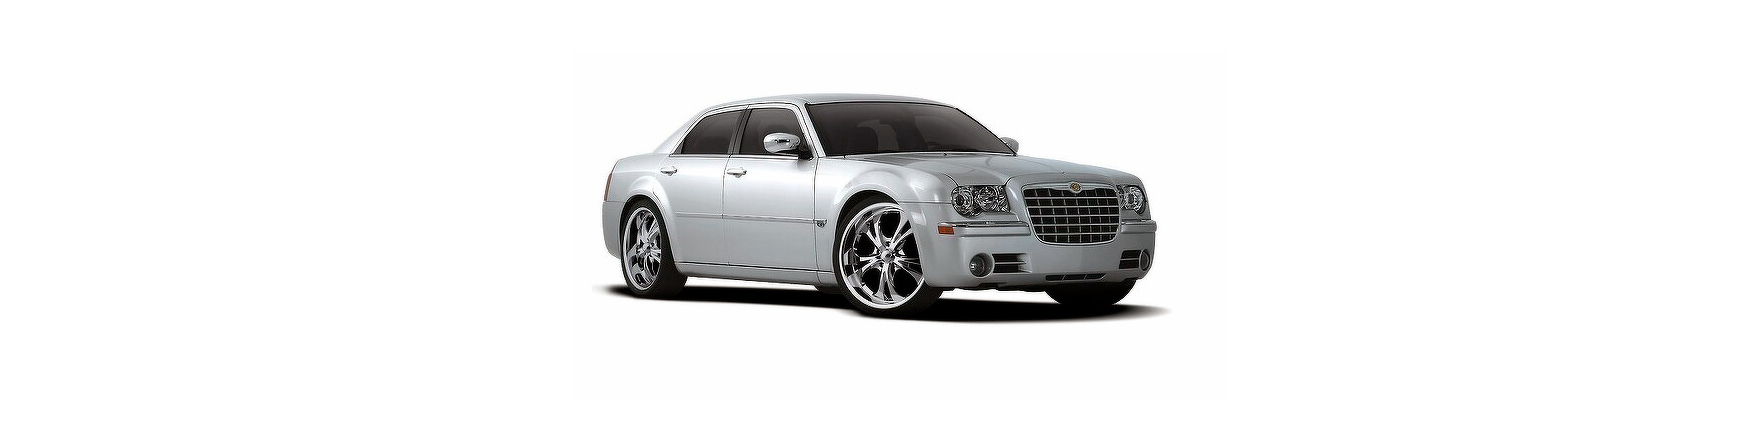 Piezas y Recambios de Chrysler 300C de 2004 a 2011. |Veramauto.es